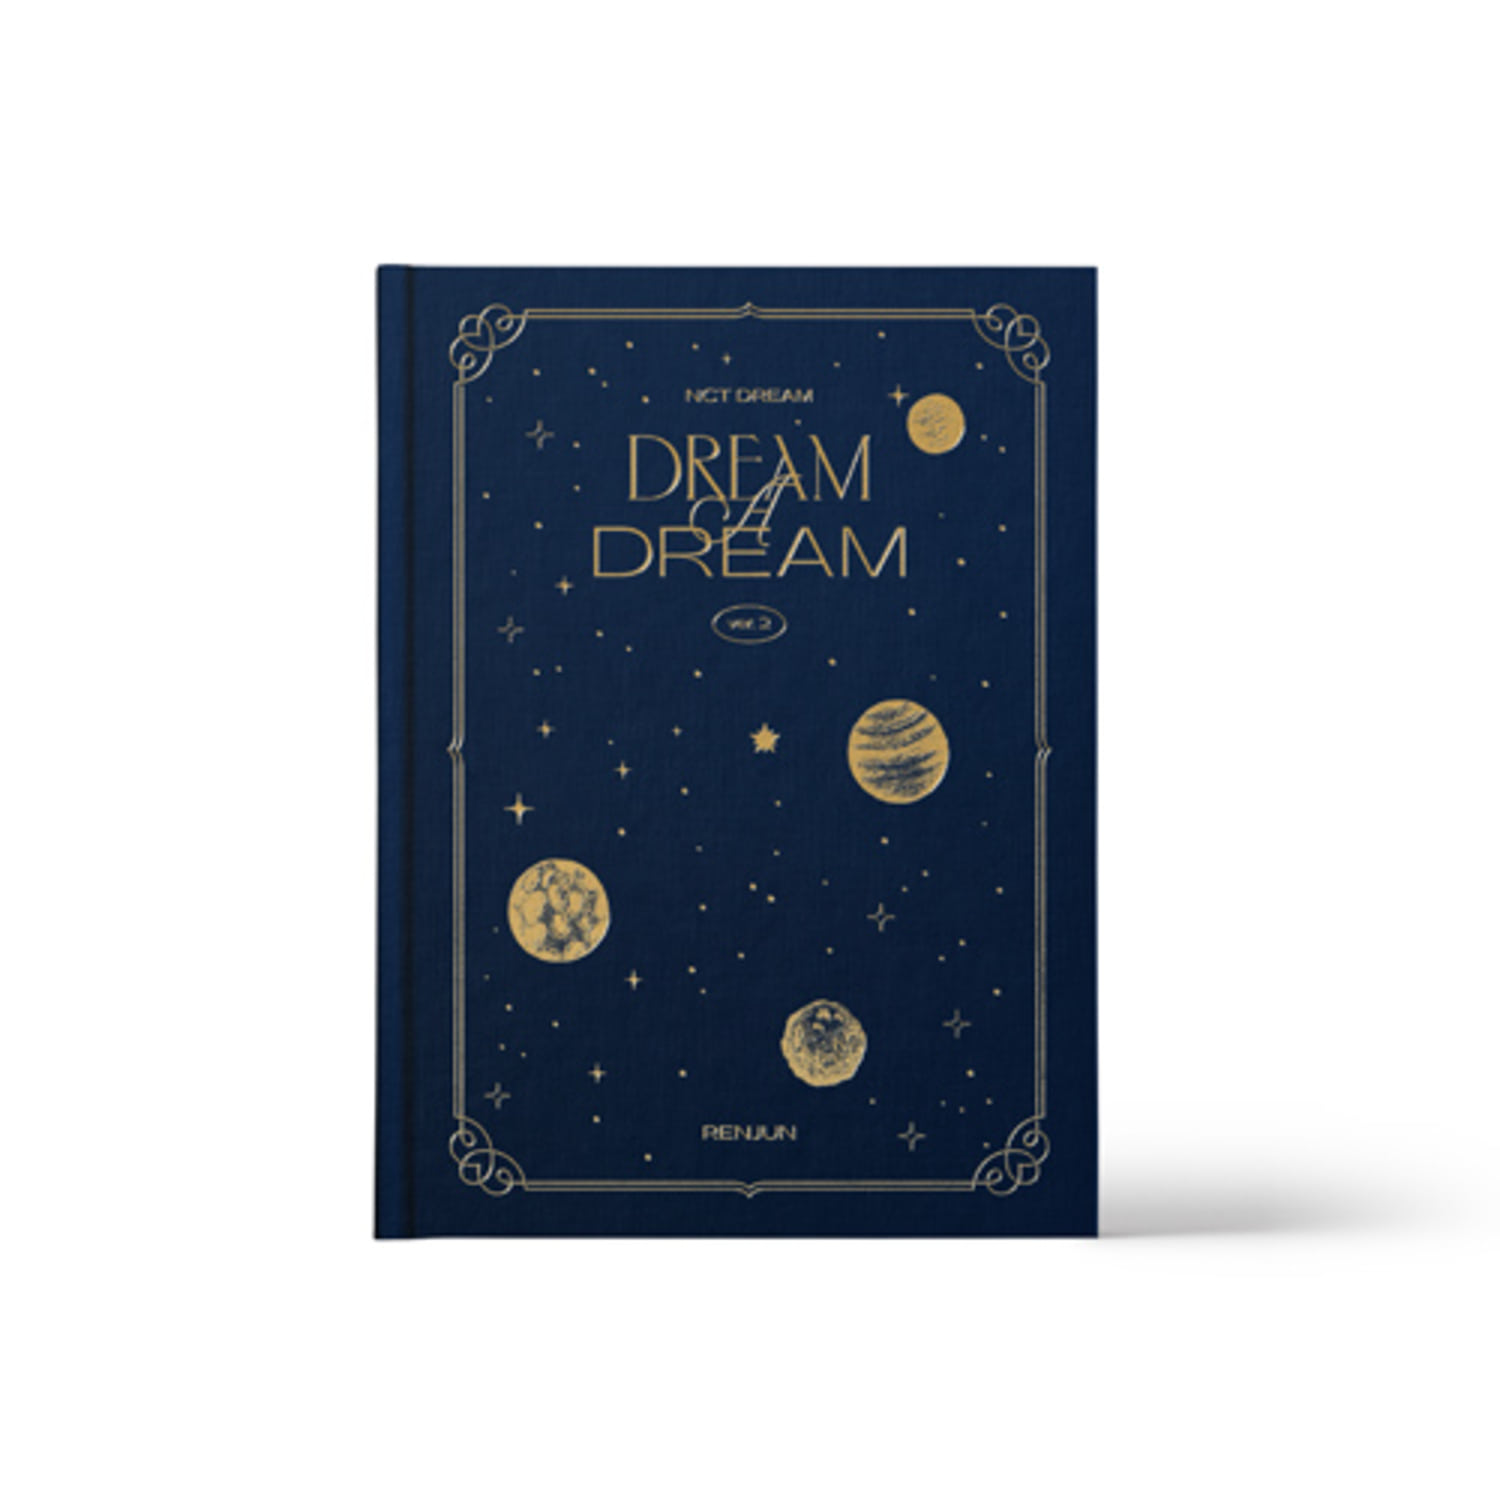 [교환반품불가]NCT DREAM  - (RENJUN) NCT DREAM PHOTO BOOK  [DREAM A DREAM ver.2]